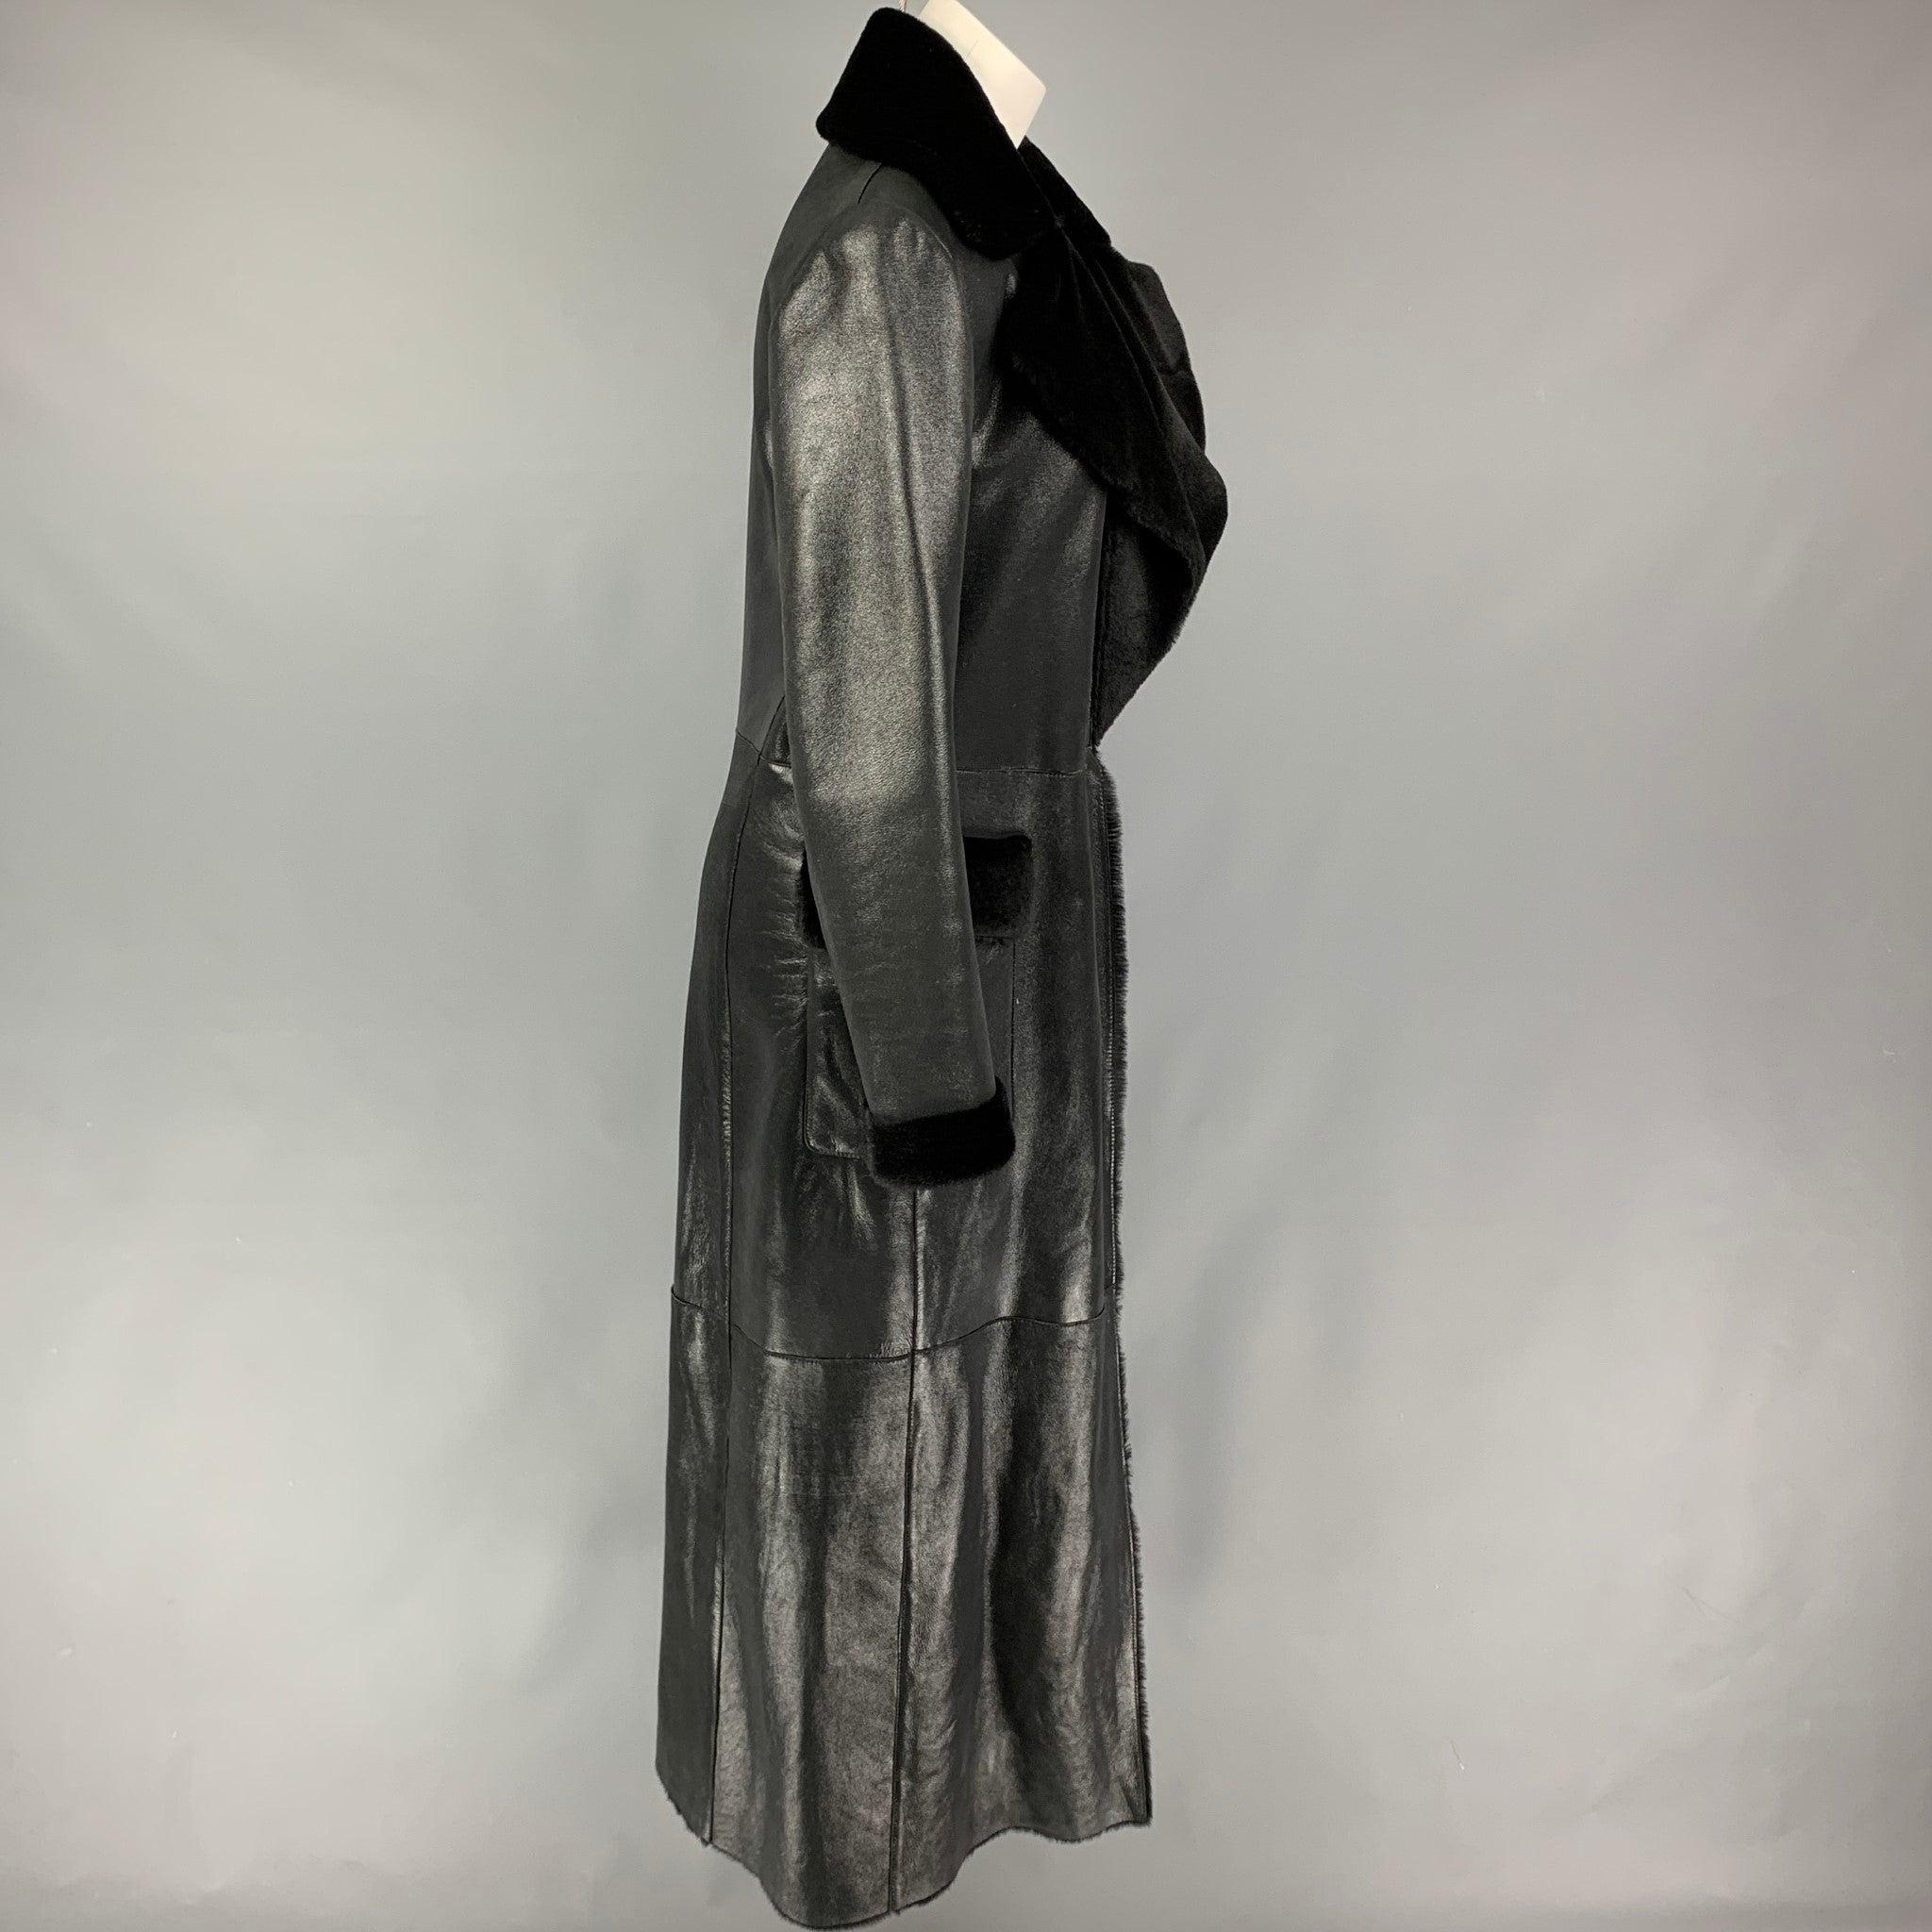 Ce manteau VALENTINO en mouton noir brillant est doté d'un large revers, de poches à rabat, de bordures en fourrure et d'une fermeture à crochets. Fabriquées en Italie.
Très bien
Etat d'occasion. 

Marqué :  10 

Mesures : 
 
Épaule : 16.5 inches